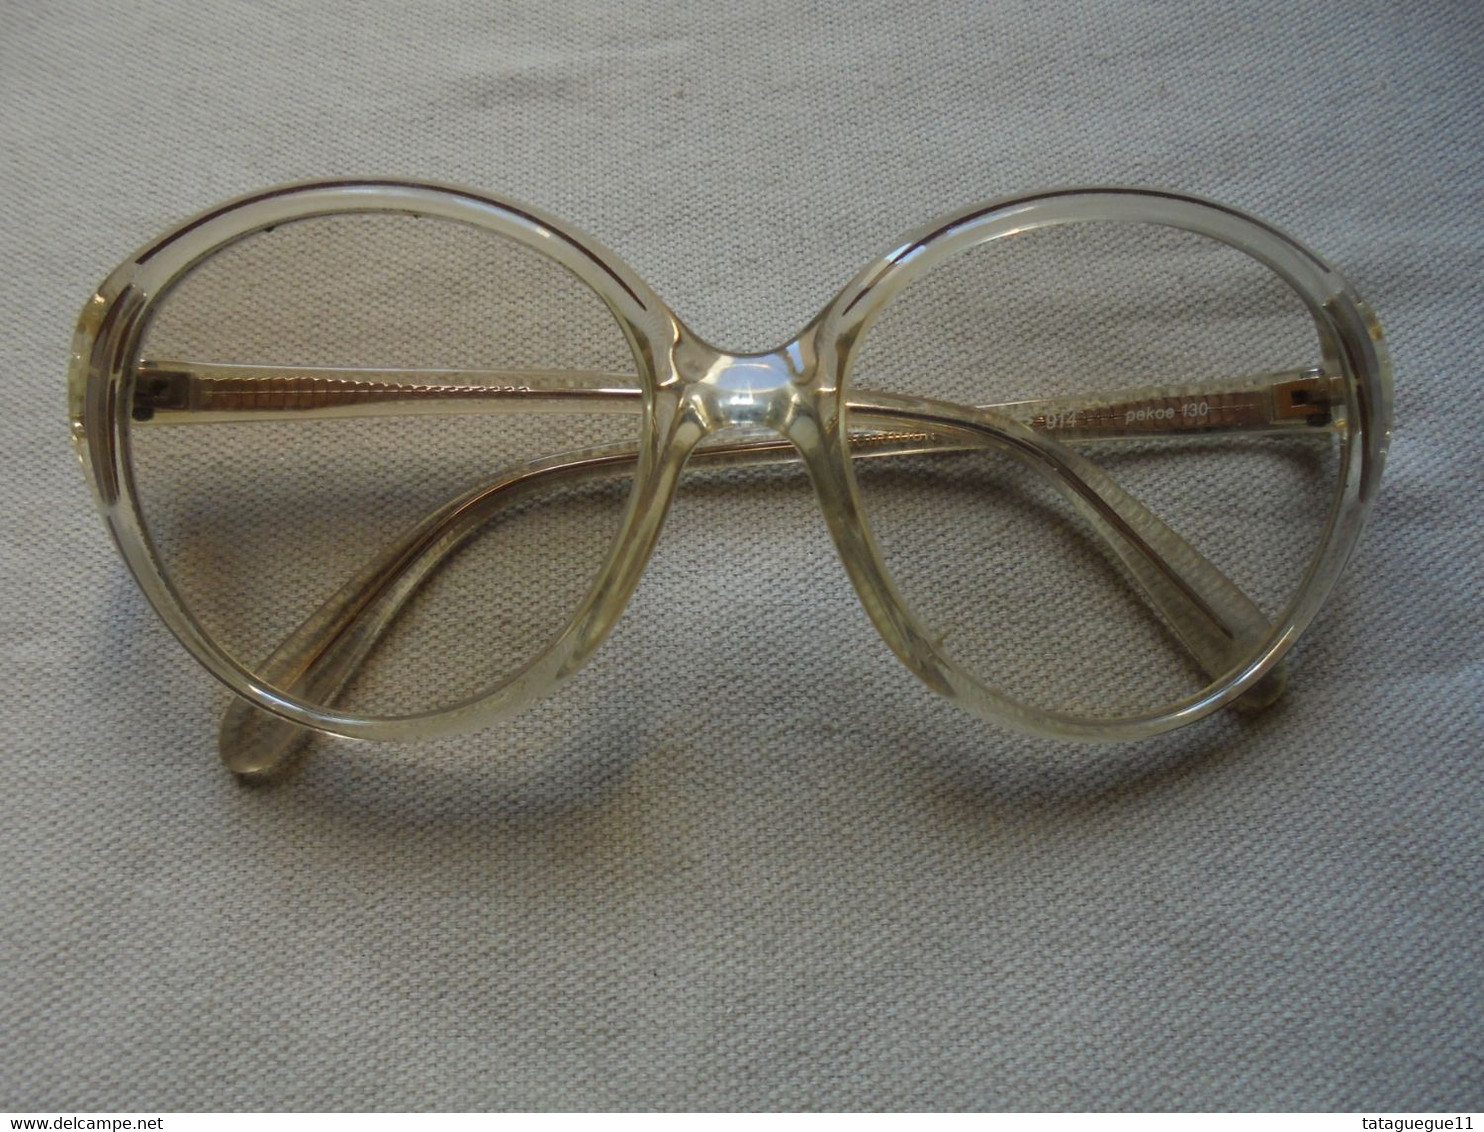 Vintage - Paire De Lunettes De Vue Rodenstock Lady R Pour Femme - Glasses